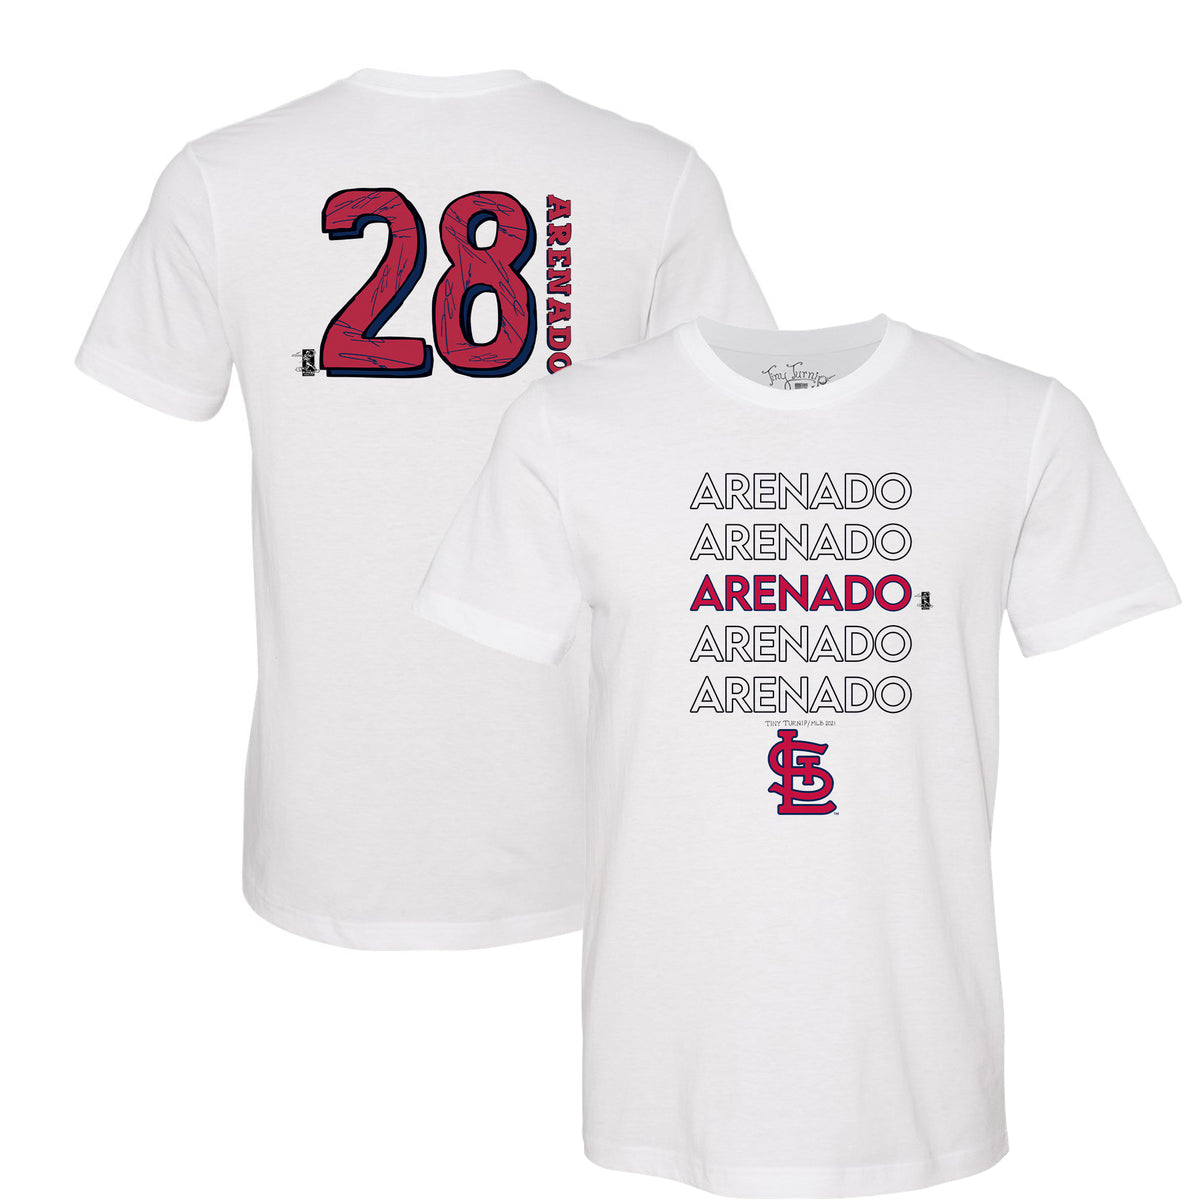 St. Louis Cardinals Nolan Arenado Stacked Tee Shirt